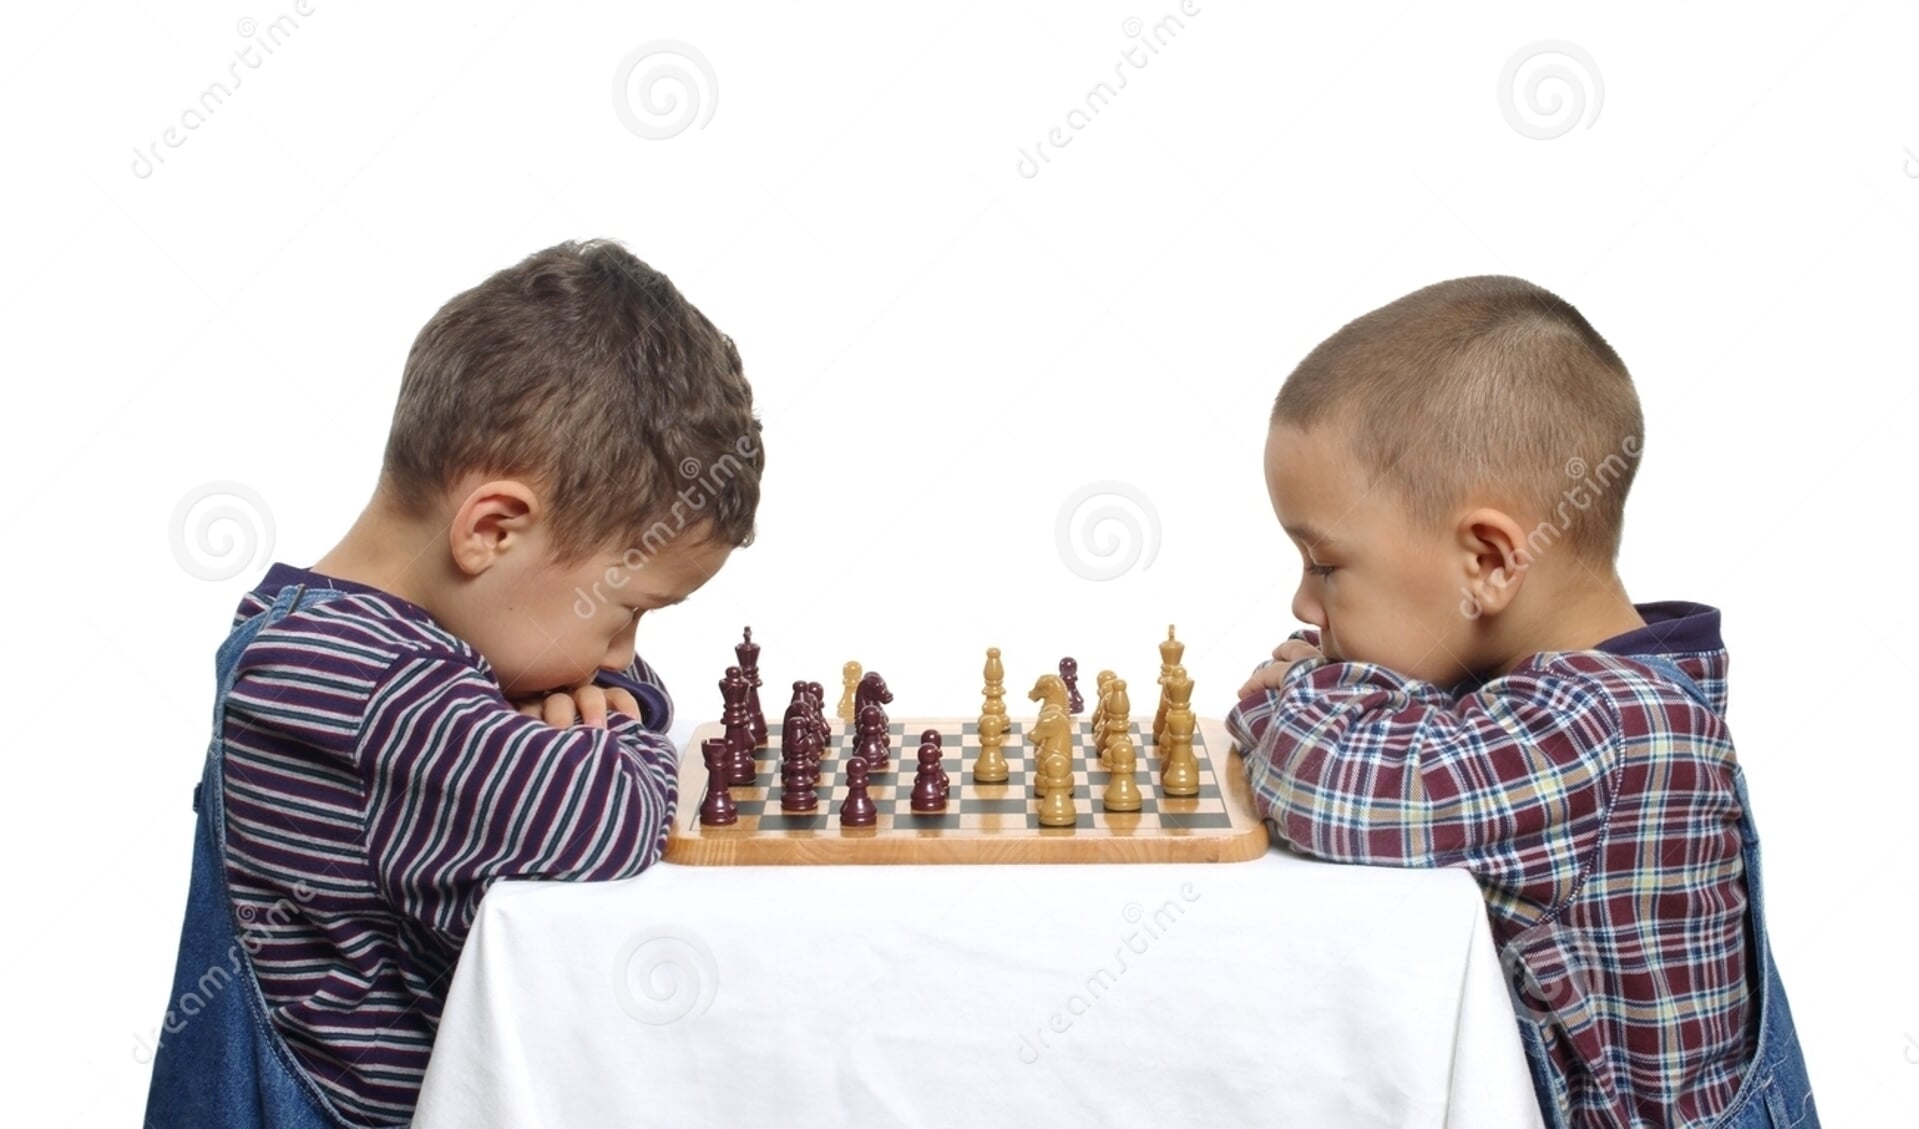 Onleesbaar tabak Betekenisvol Kinderen thuis leren schaken - destadgorinchem.nl Nieuws uit de regio  Gorinchem